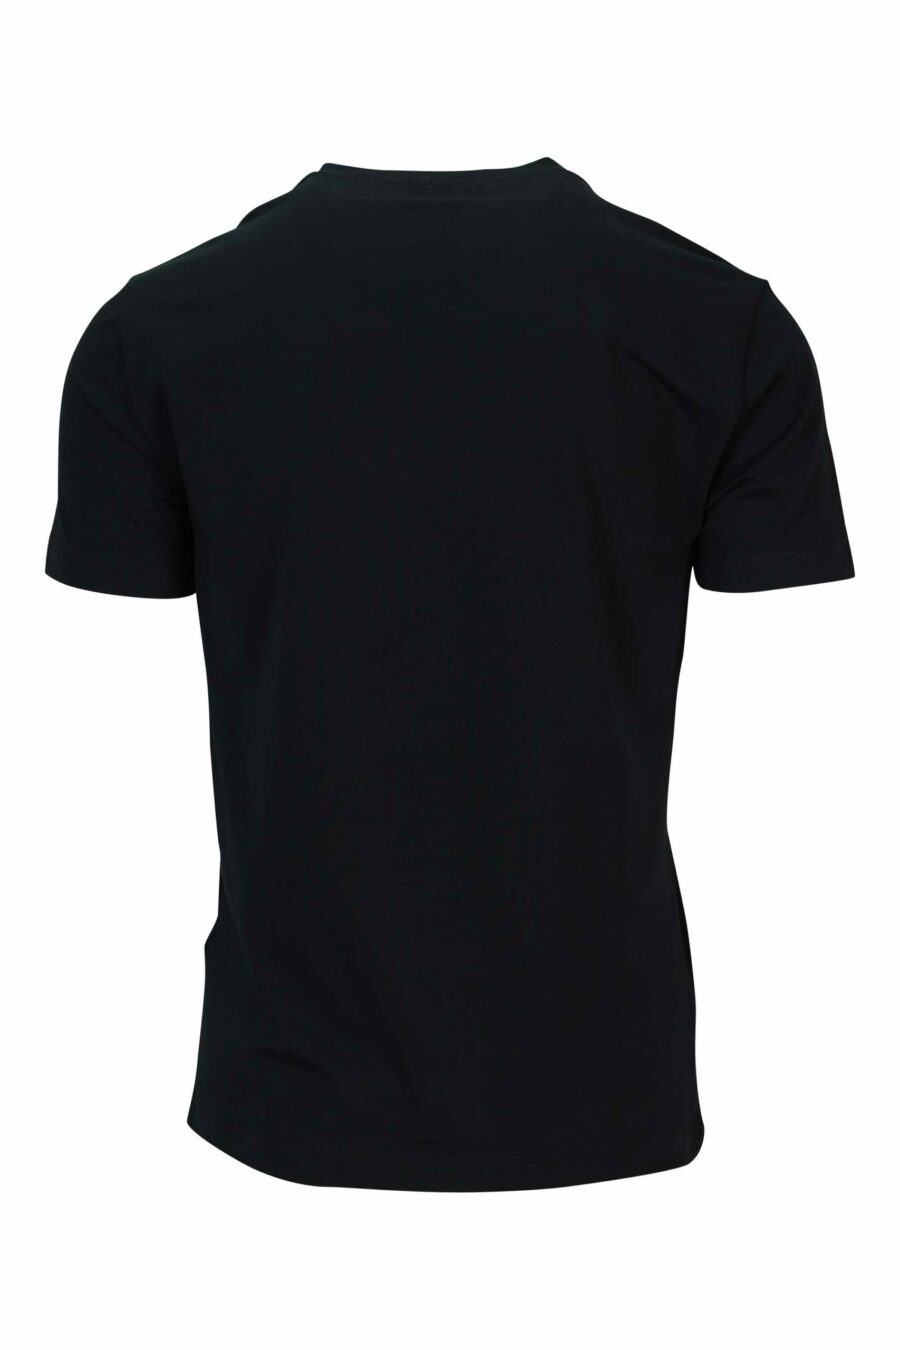 T-shirt noir avec bleu "lux identity" maxilogo - 8058947491346 1 1 à l'échelle